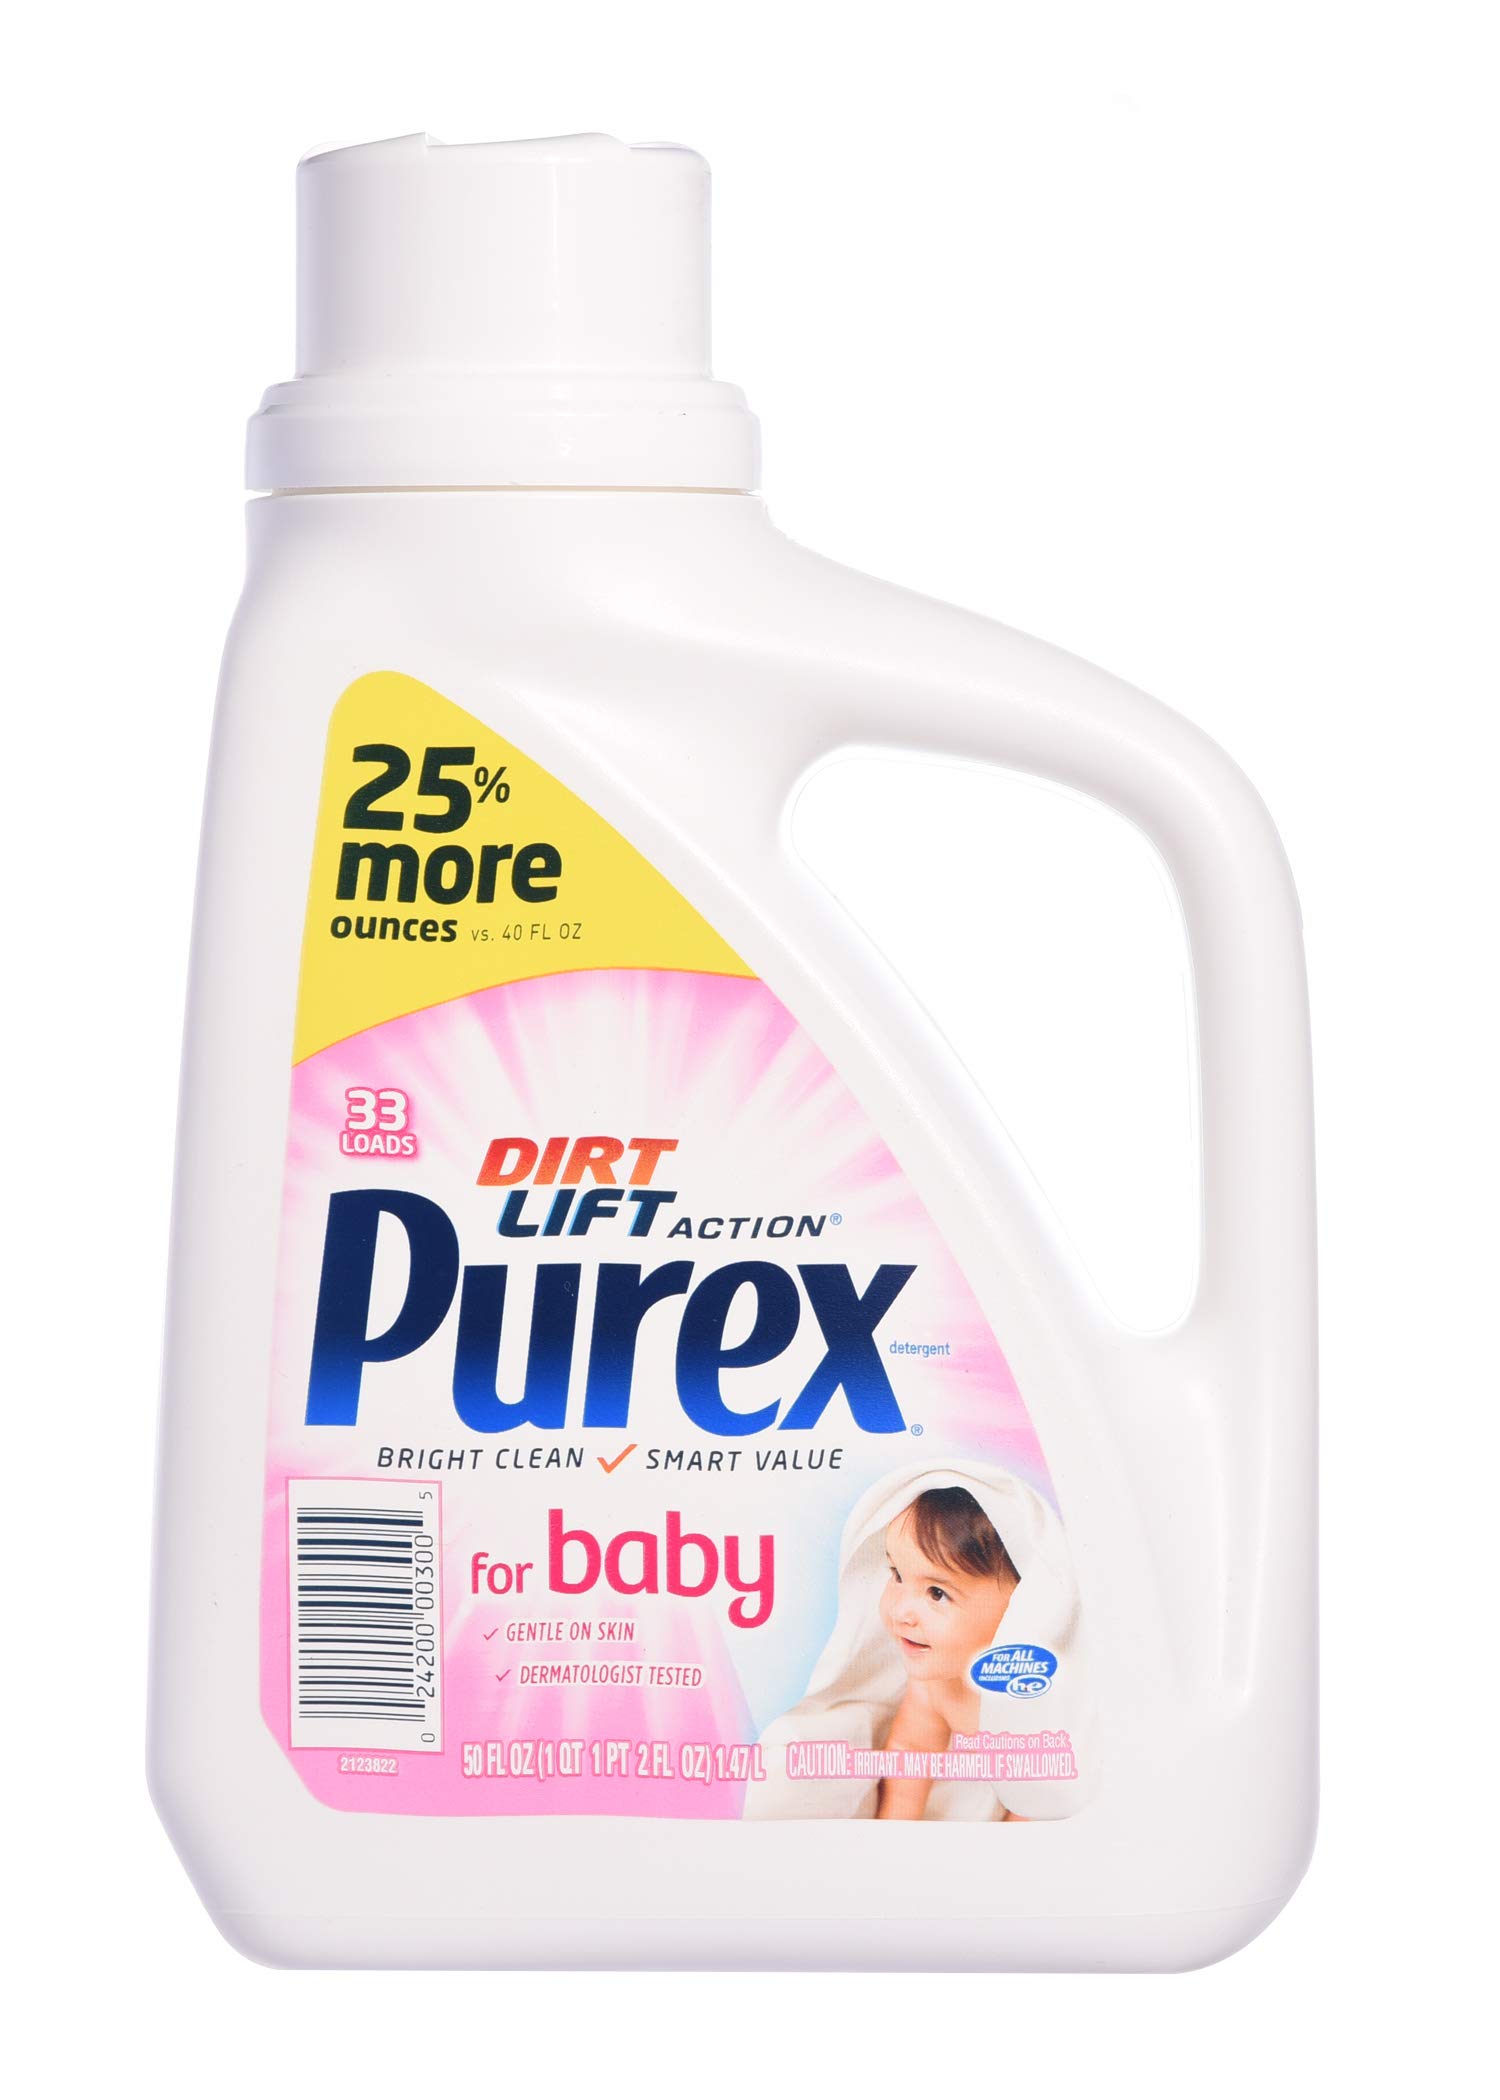 HCMNước Giặt Purex Baby 1.47Lít -Mỹ